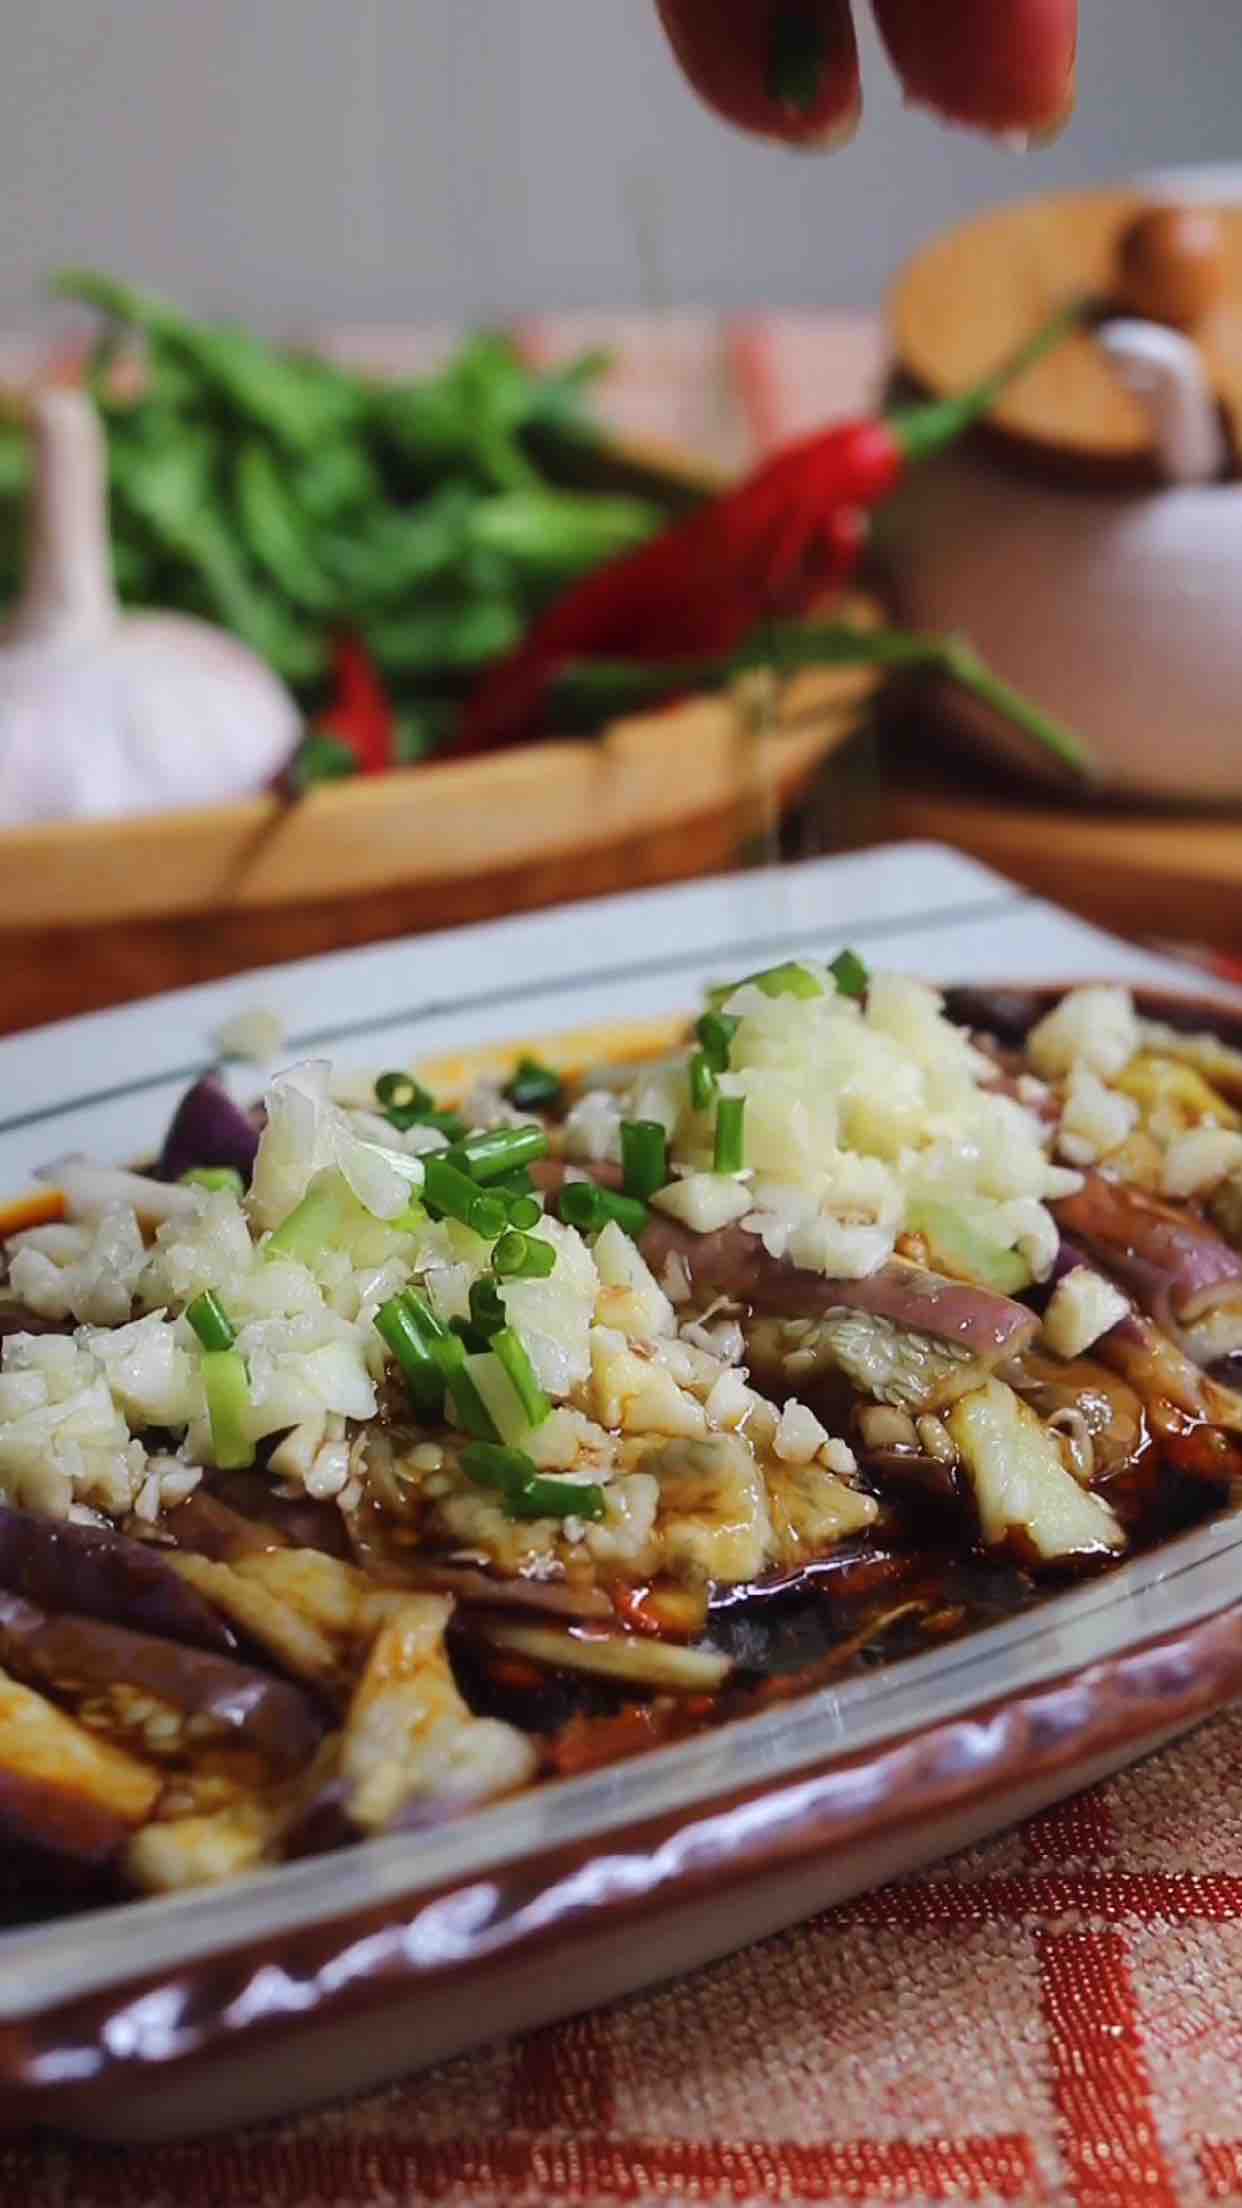 Oily Flavored Eggplant recipe